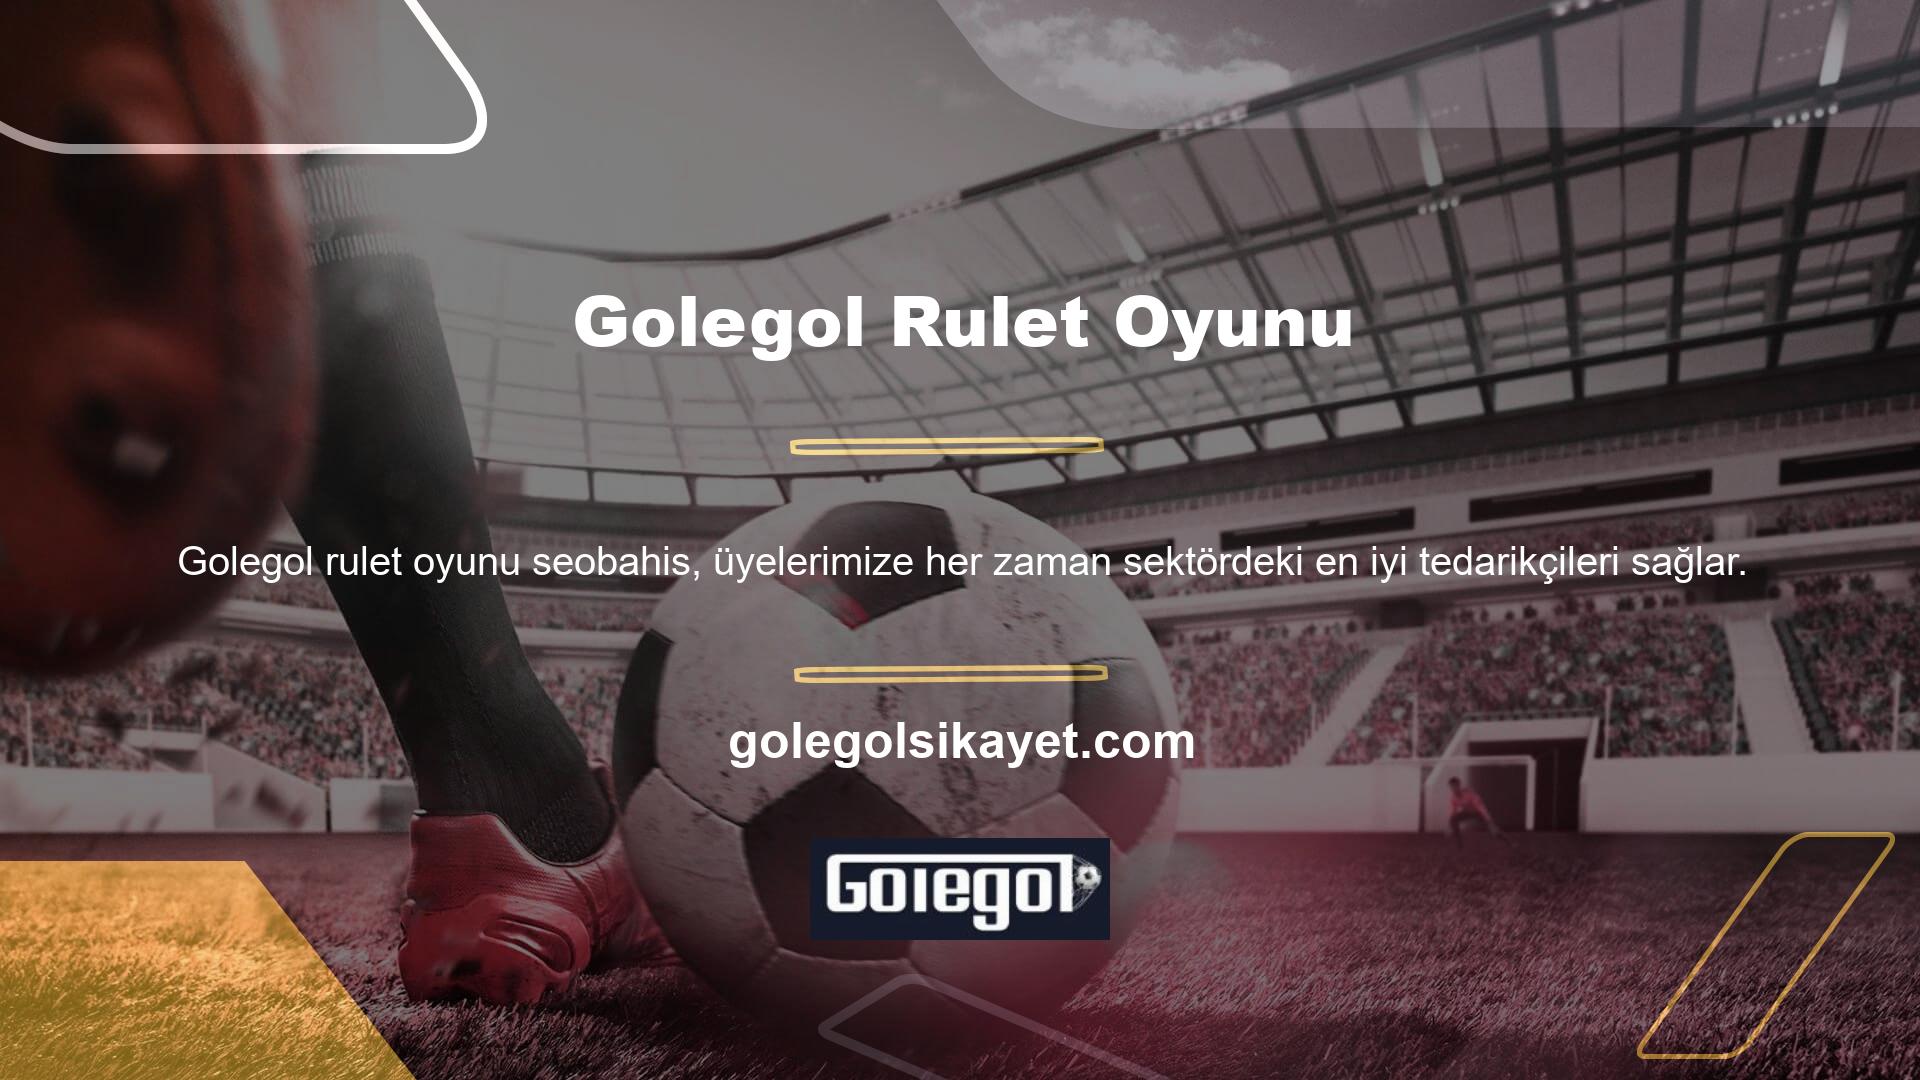 Şu anda Golegol web sitesi tamamen güvenilir ve sorunsuz hizmet vermektedir